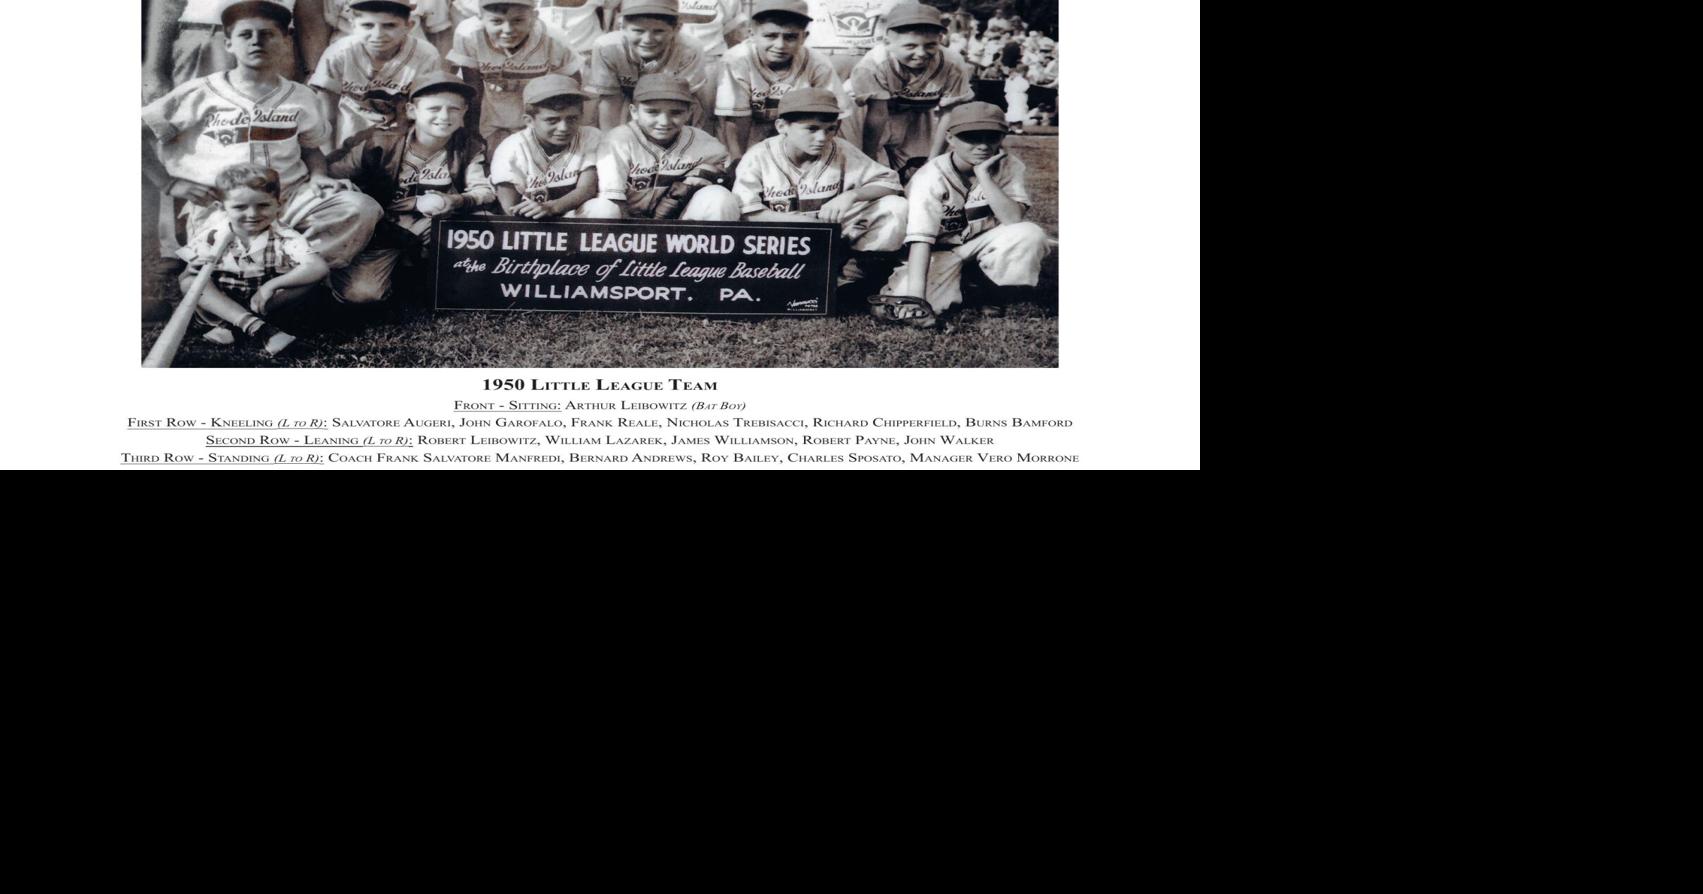 Whataburger Reunites 1950s Little League Baseball Team